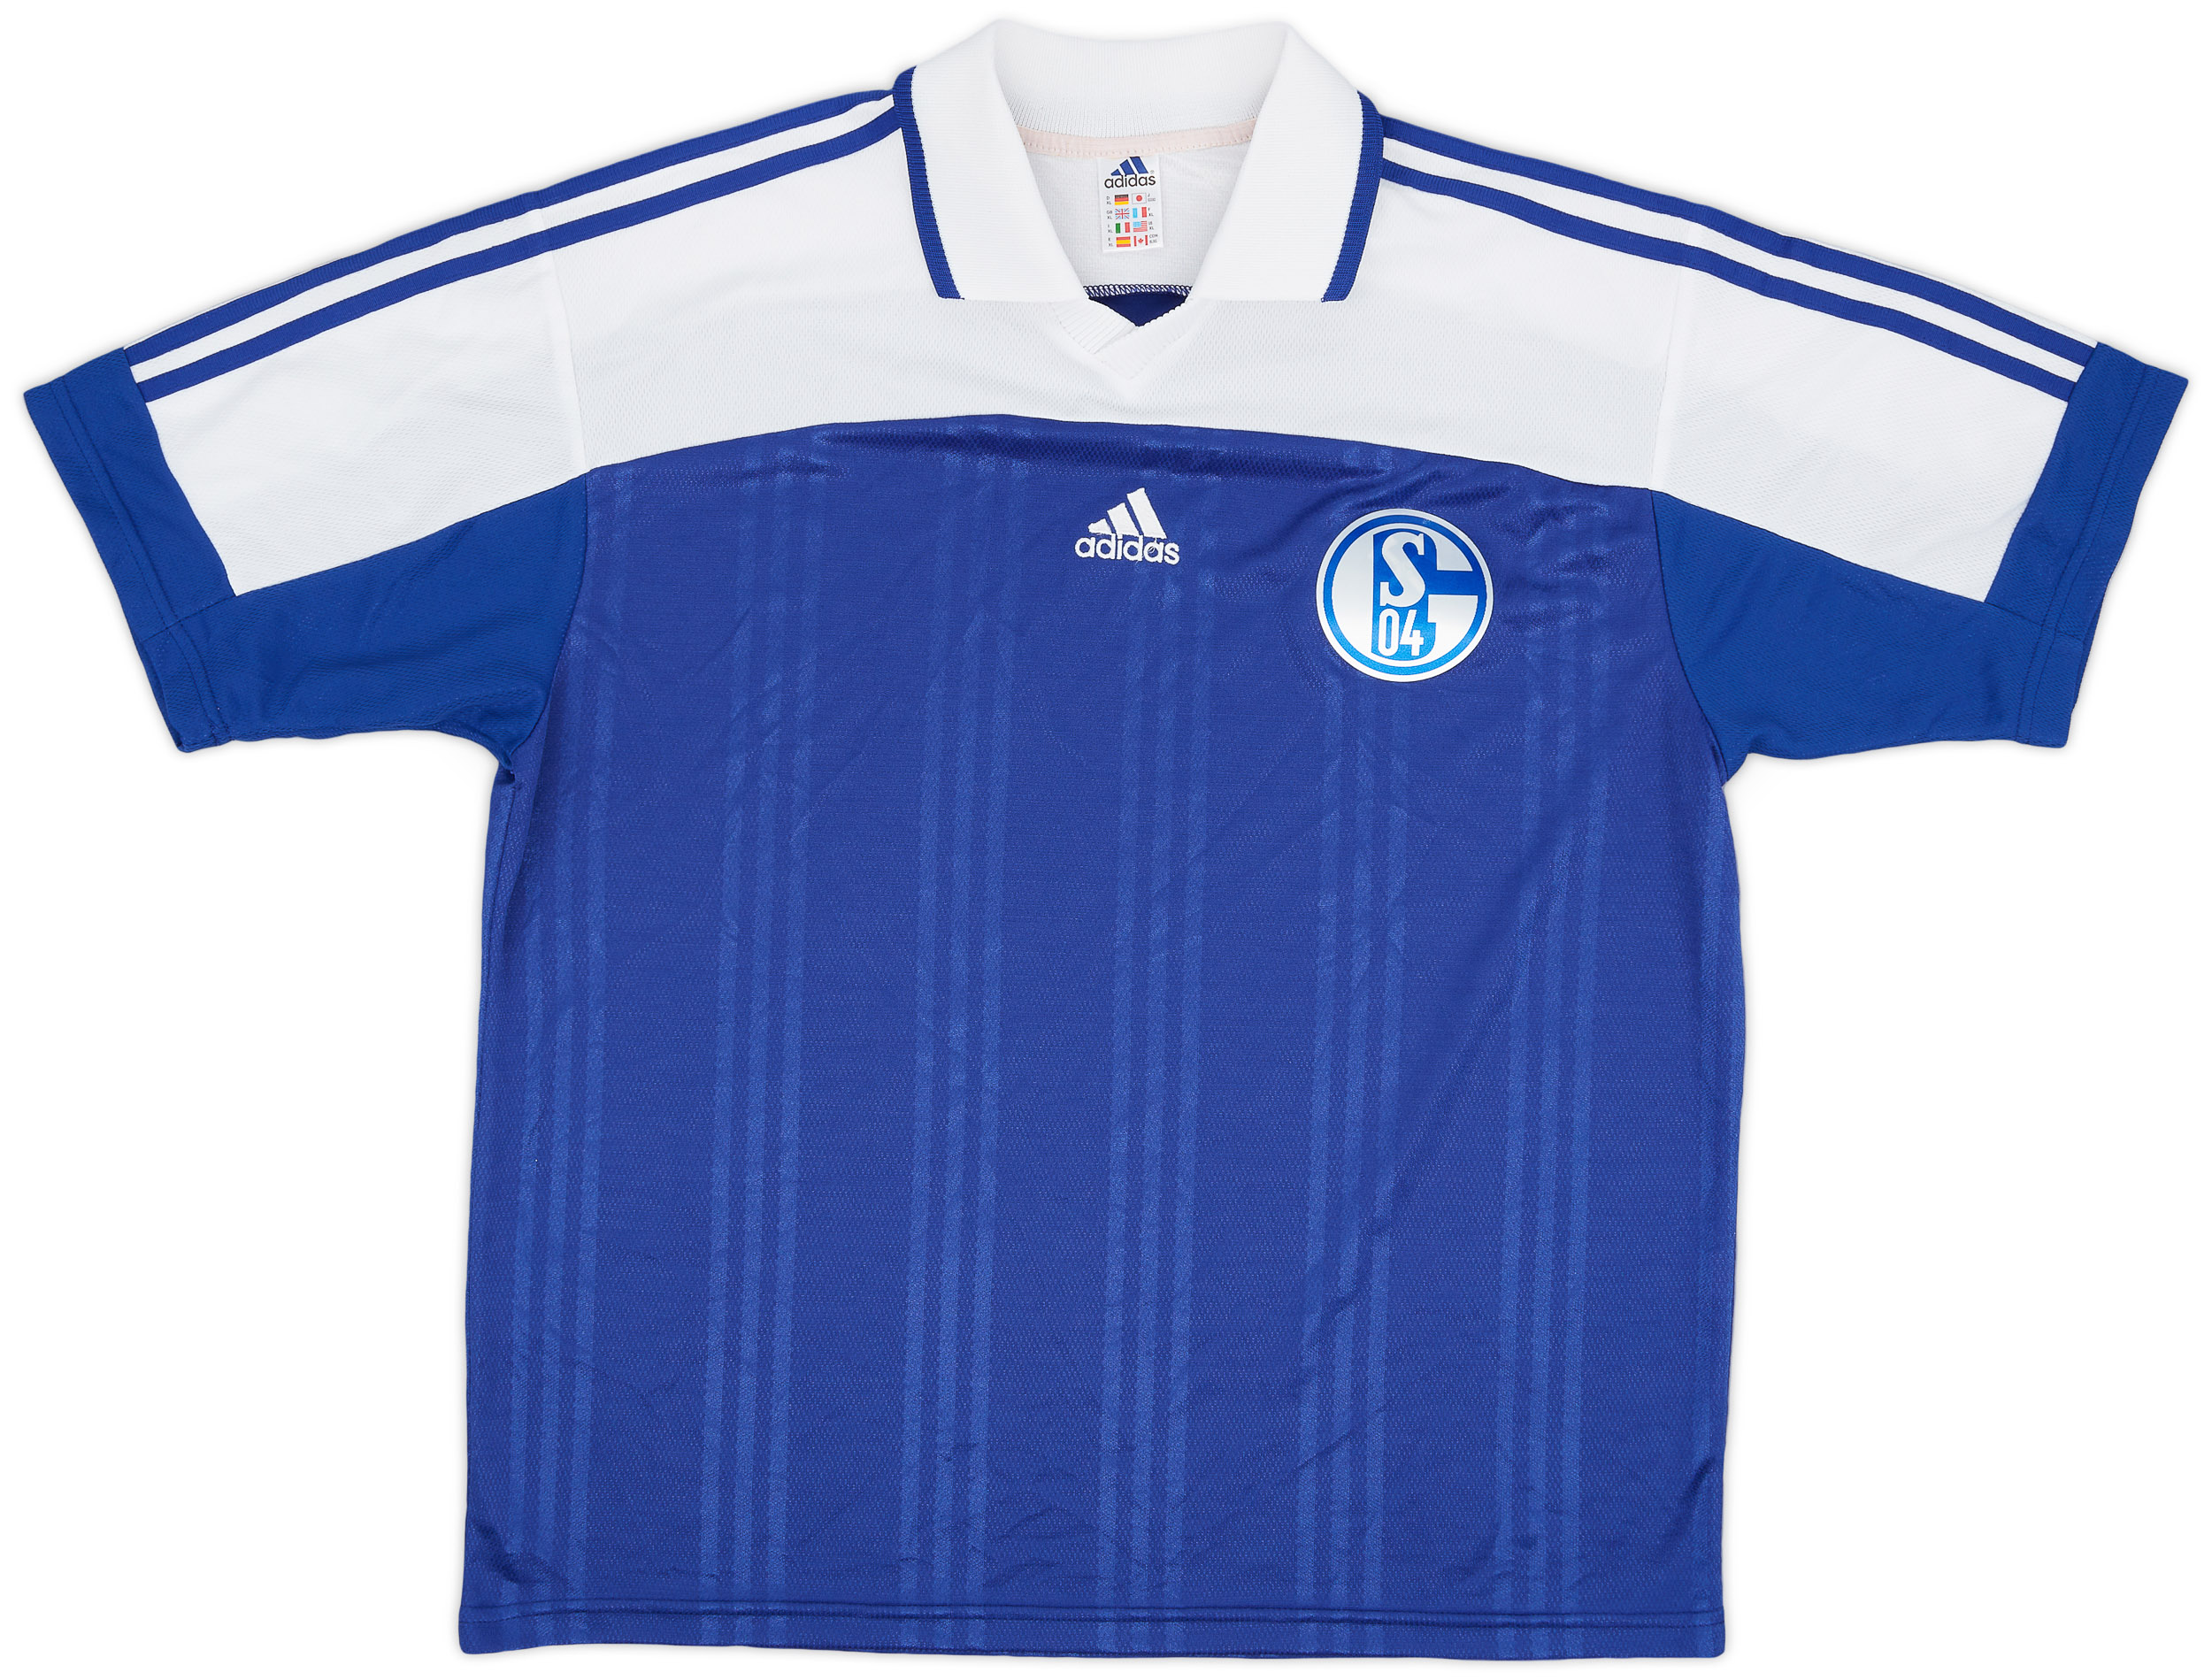 2000s adidas Template (Schalke) Shirt - 9/10 - ()